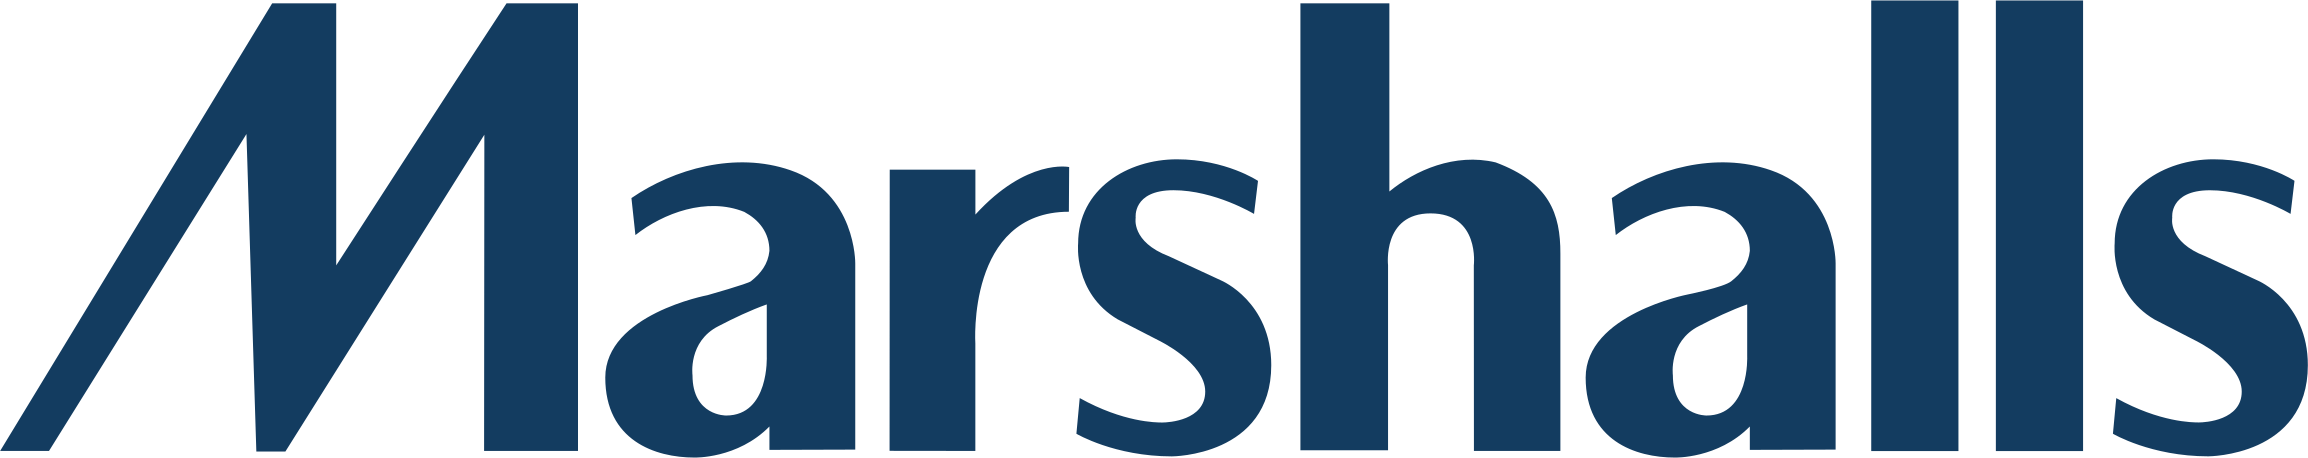 logo-marshalls